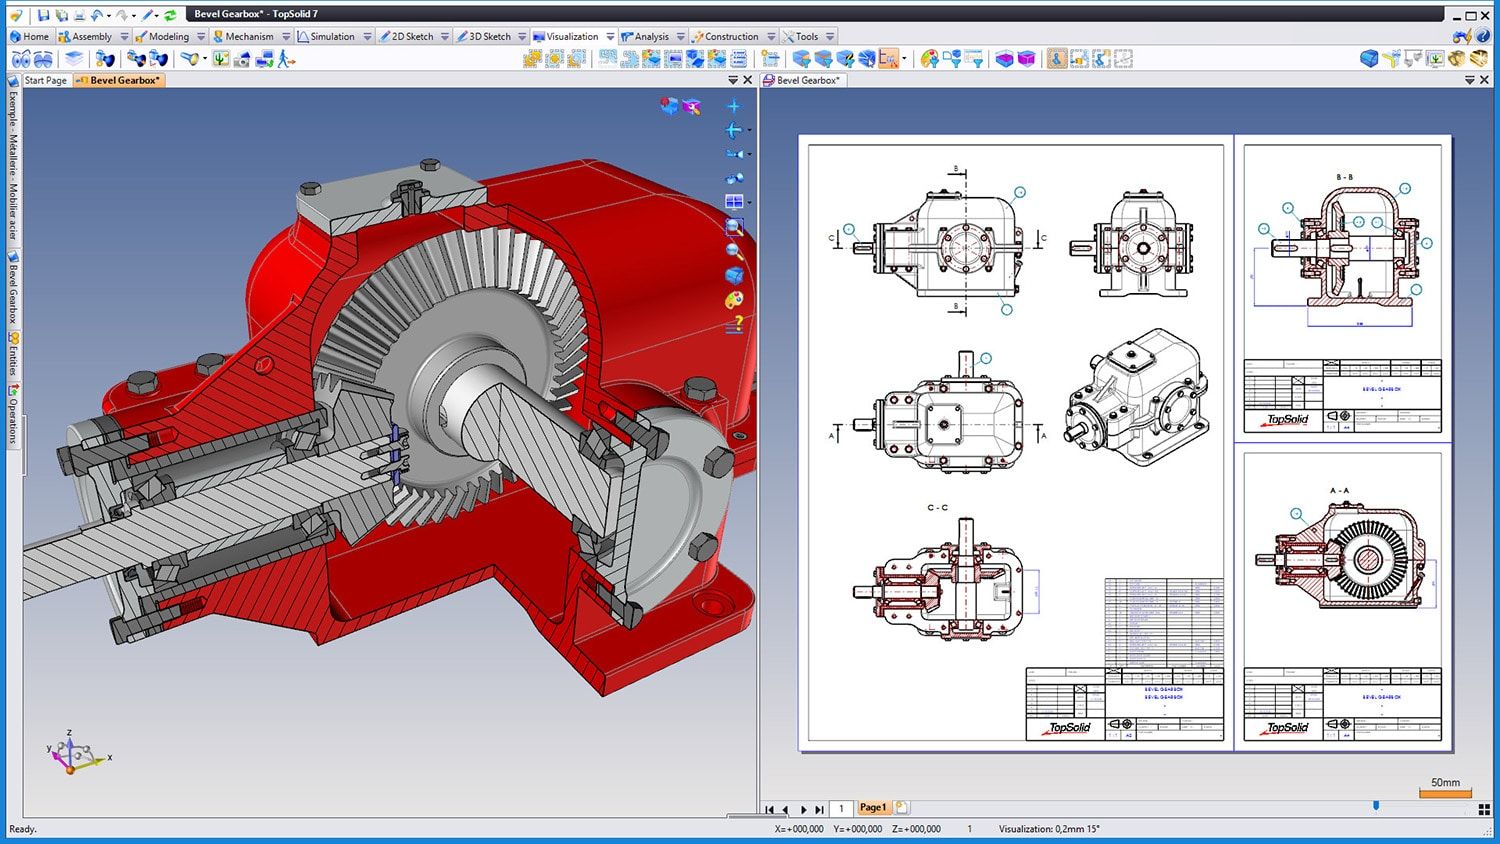 Jak program TopSolid Design 3D wspiera pracę mechaników w szybkim projektowaniu podzespołów, części i maszyn?